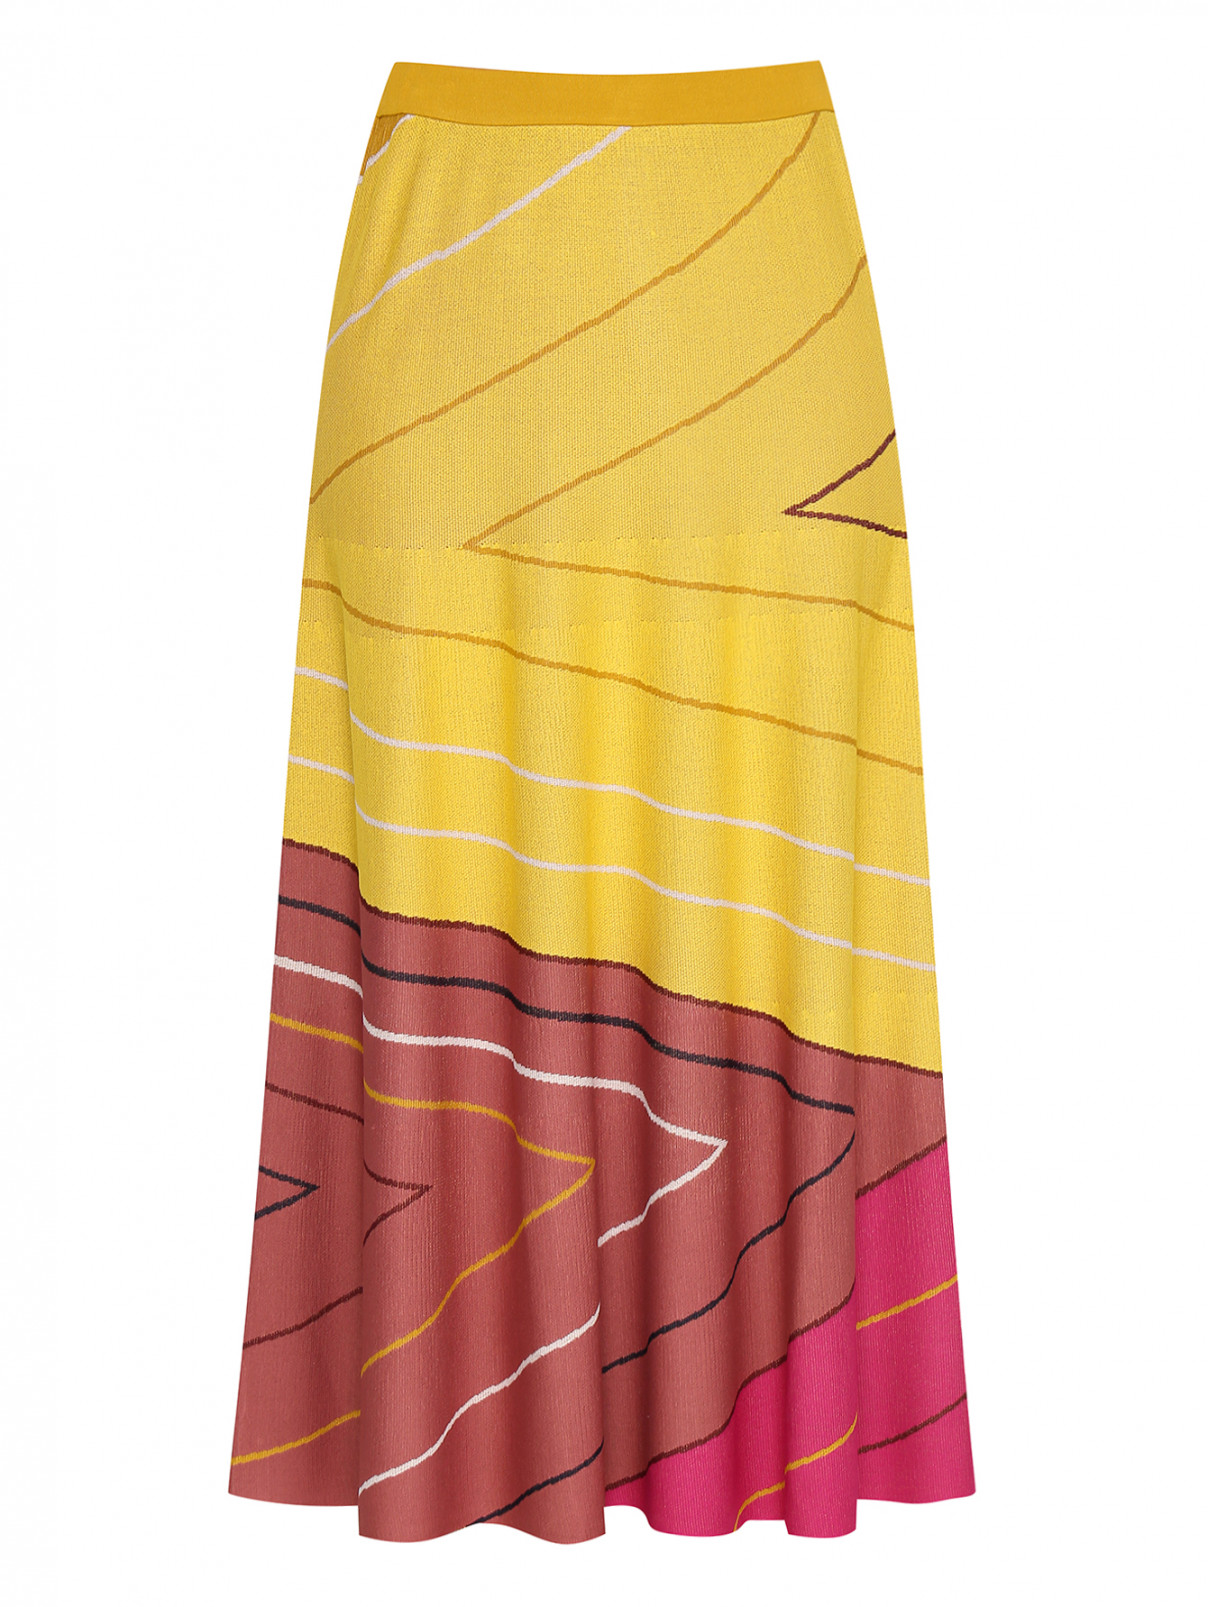 Юбка трикотажная с рисунком Marina Rinaldi  –  Общий вид  – Цвет:  Розовый